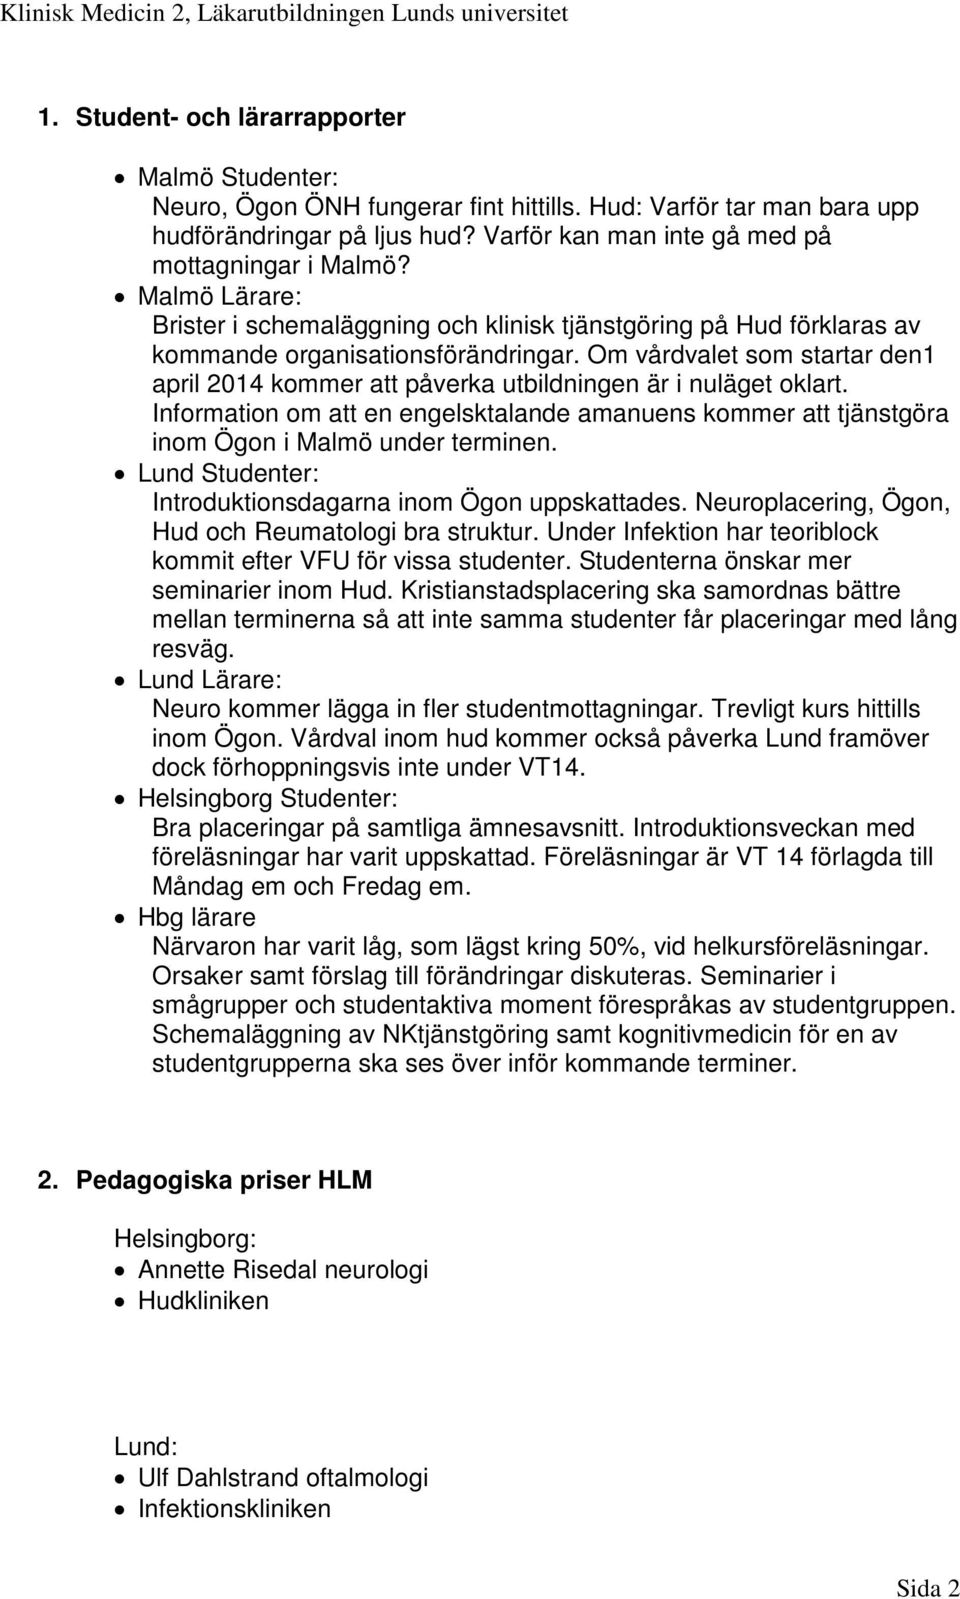 Om vårdvalet som startar den1 april 2014 kommer att påverka utbildningen är i nuläget oklart. Information om att en engelsktalande amanuens kommer att tjänstgöra inom Ögon i Malmö under terminen.